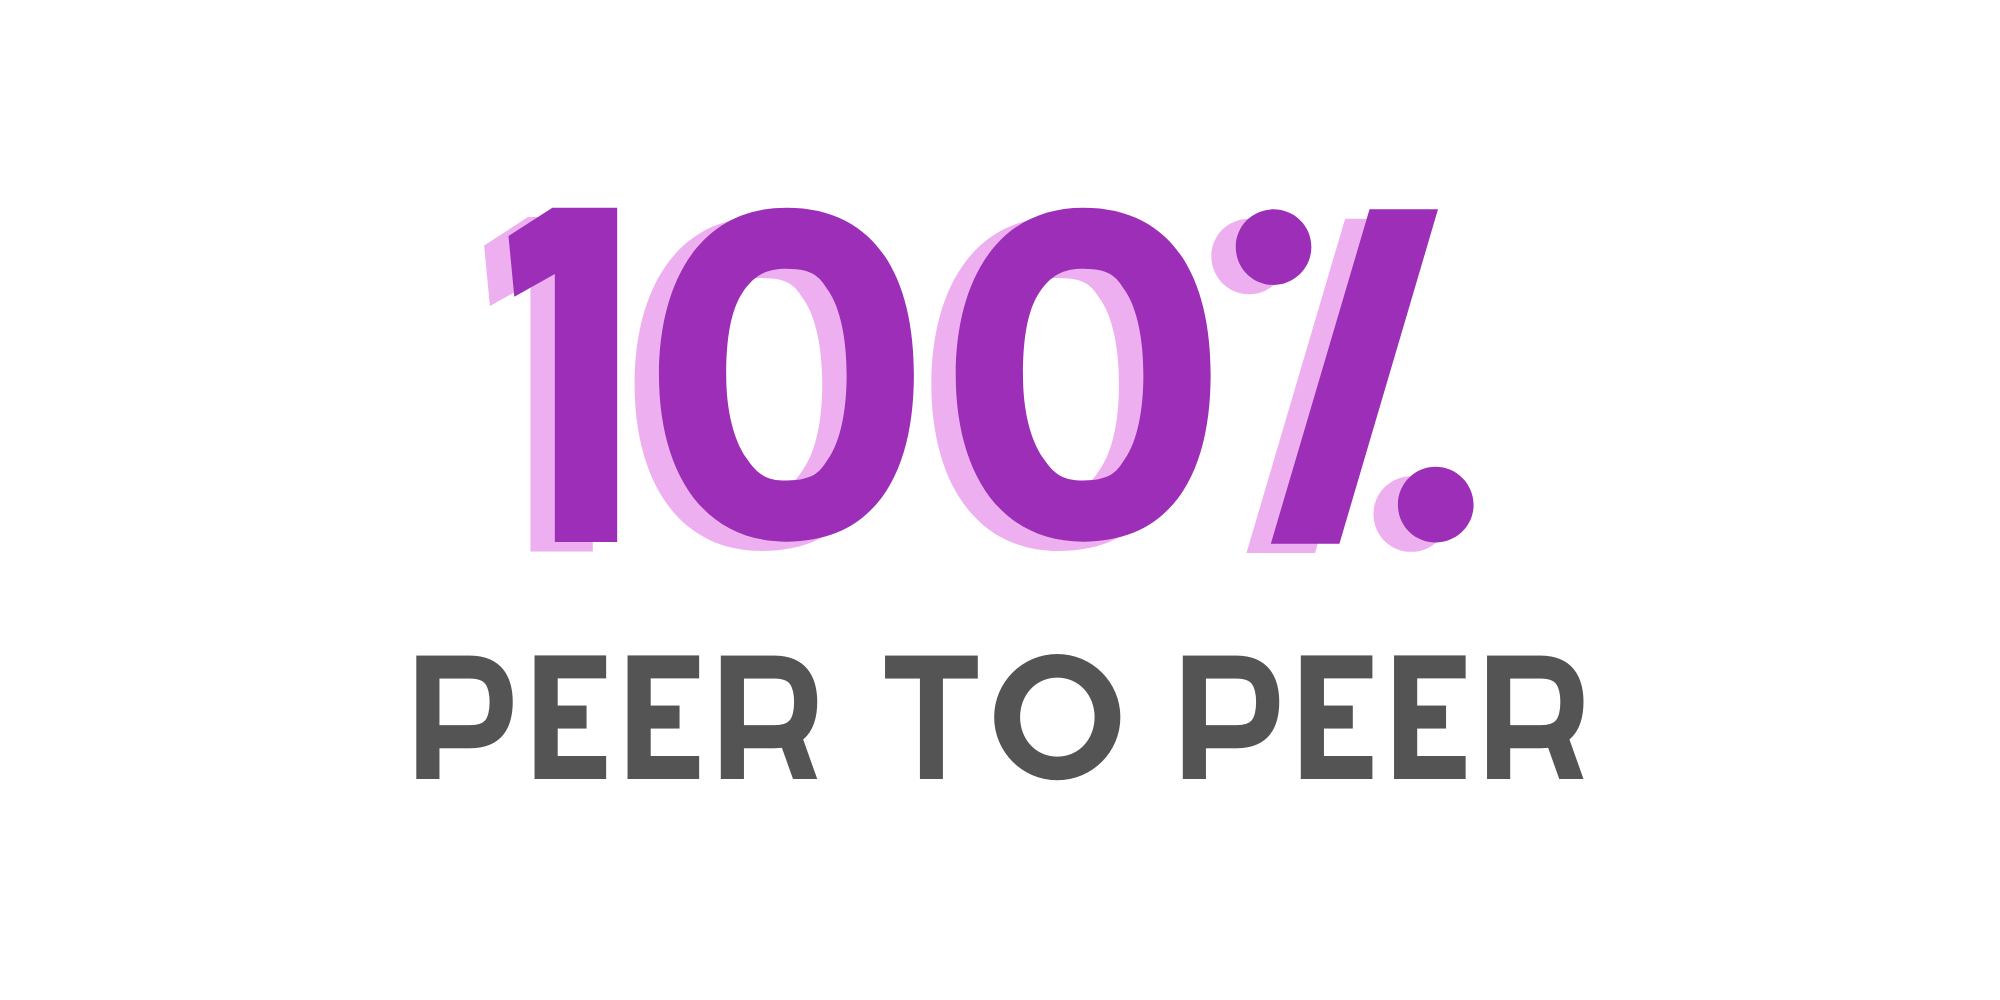 100% peer to peer